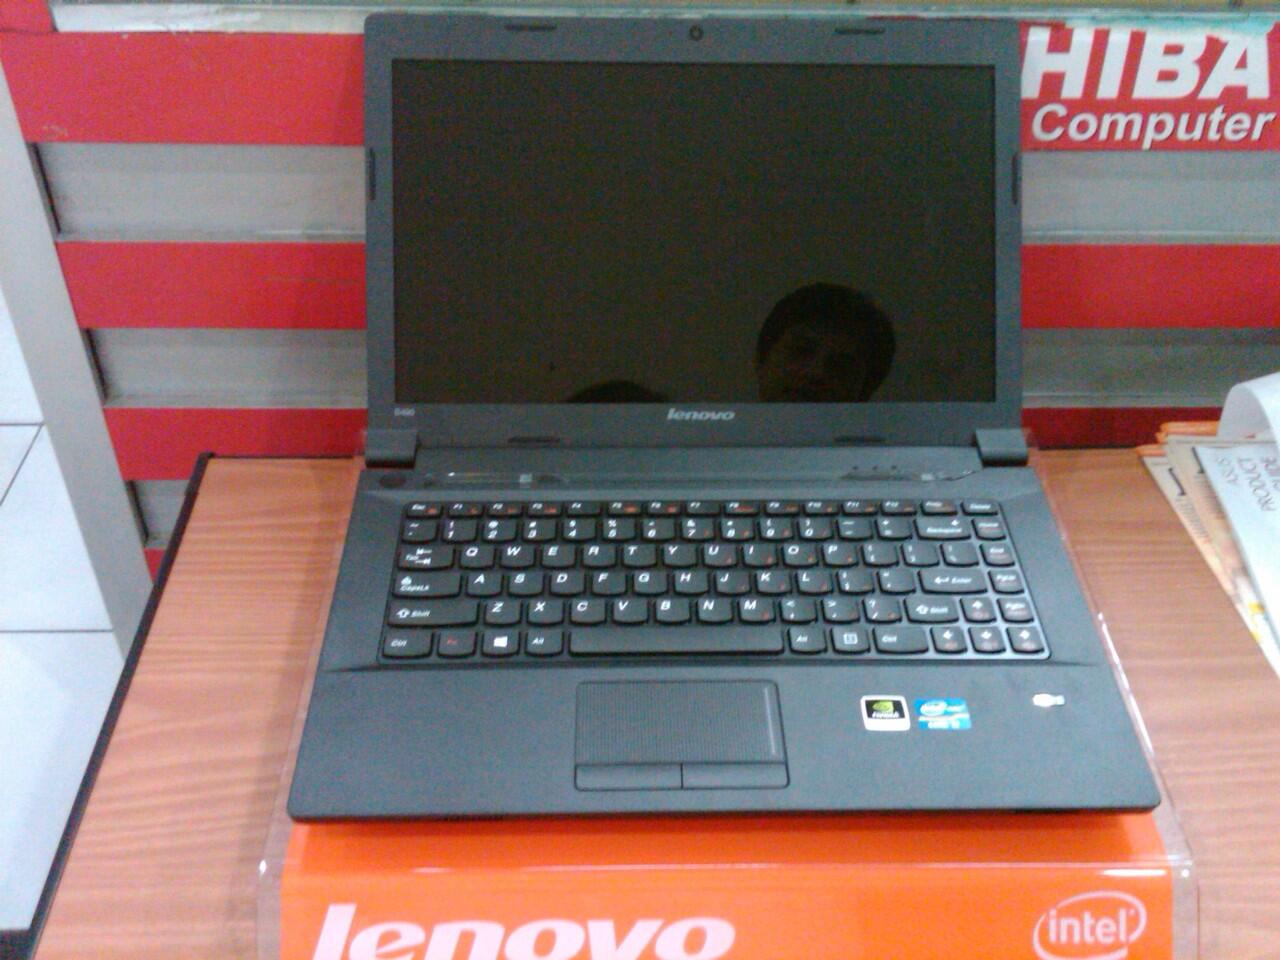 Terjual Lenovo Ideapad B490-5656 (3110M/2/500/GT610-1GB 